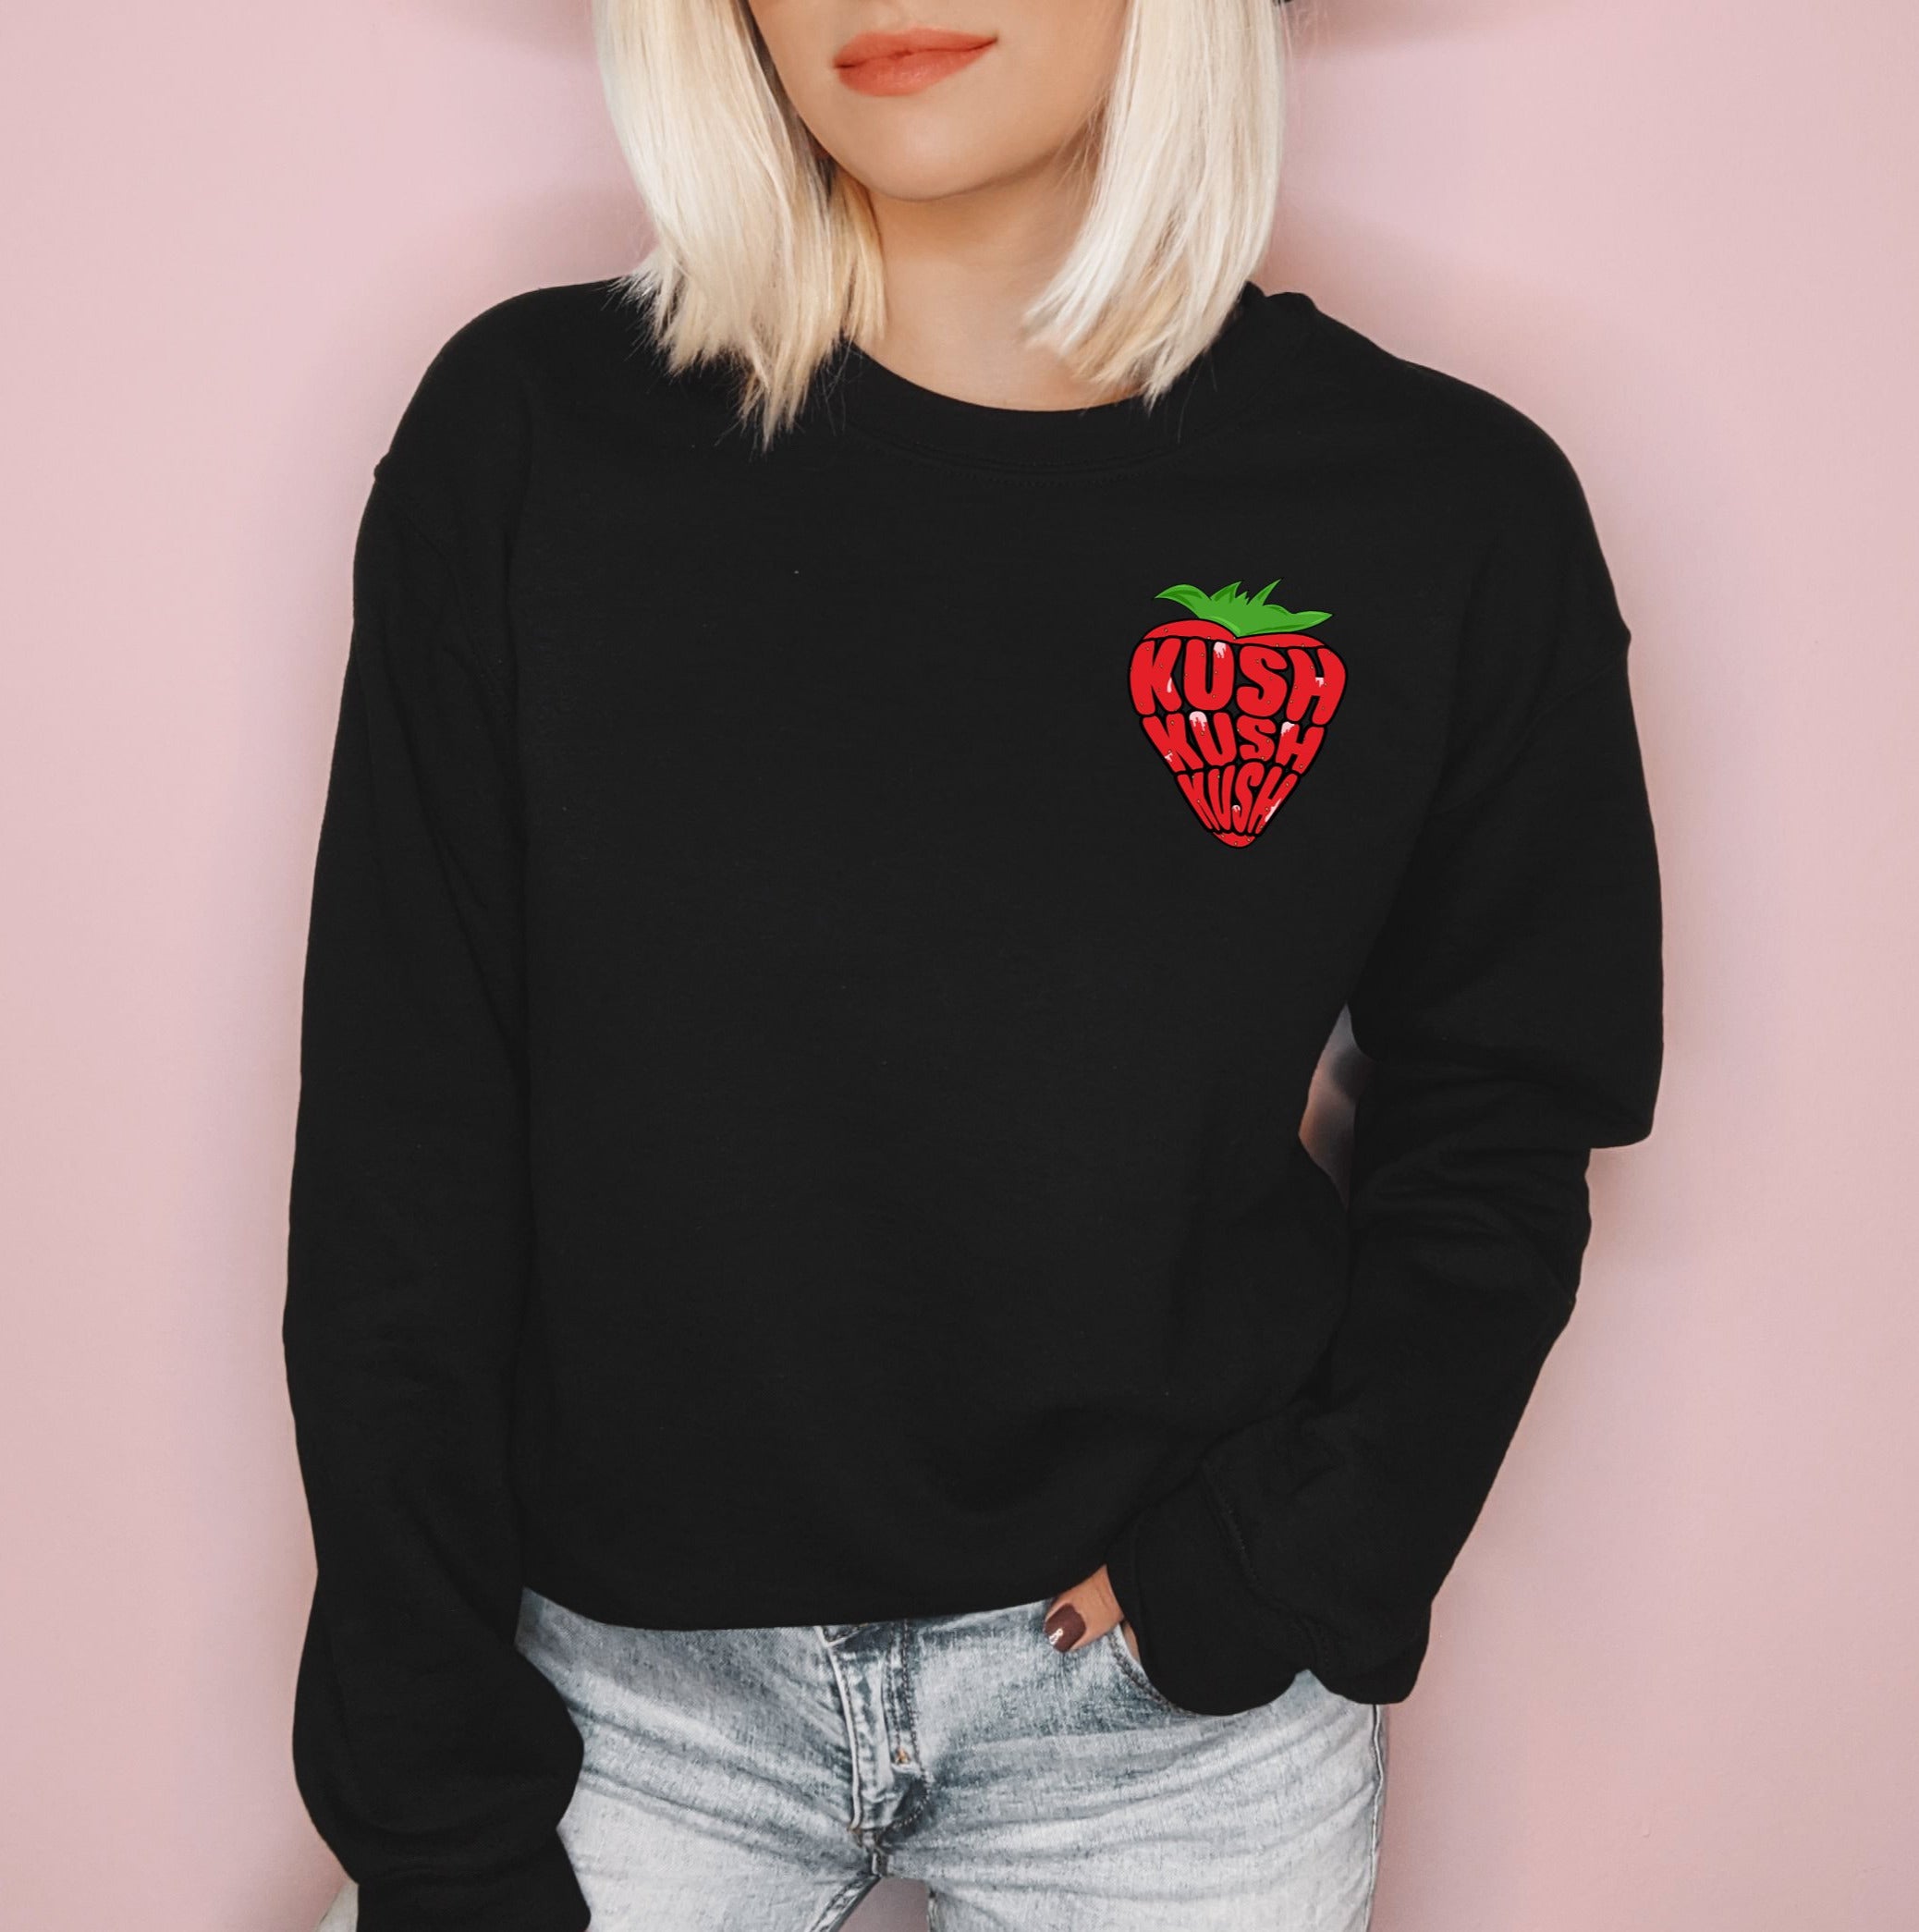 Black sweatshirt with a strawberry saying kush - HighCiti